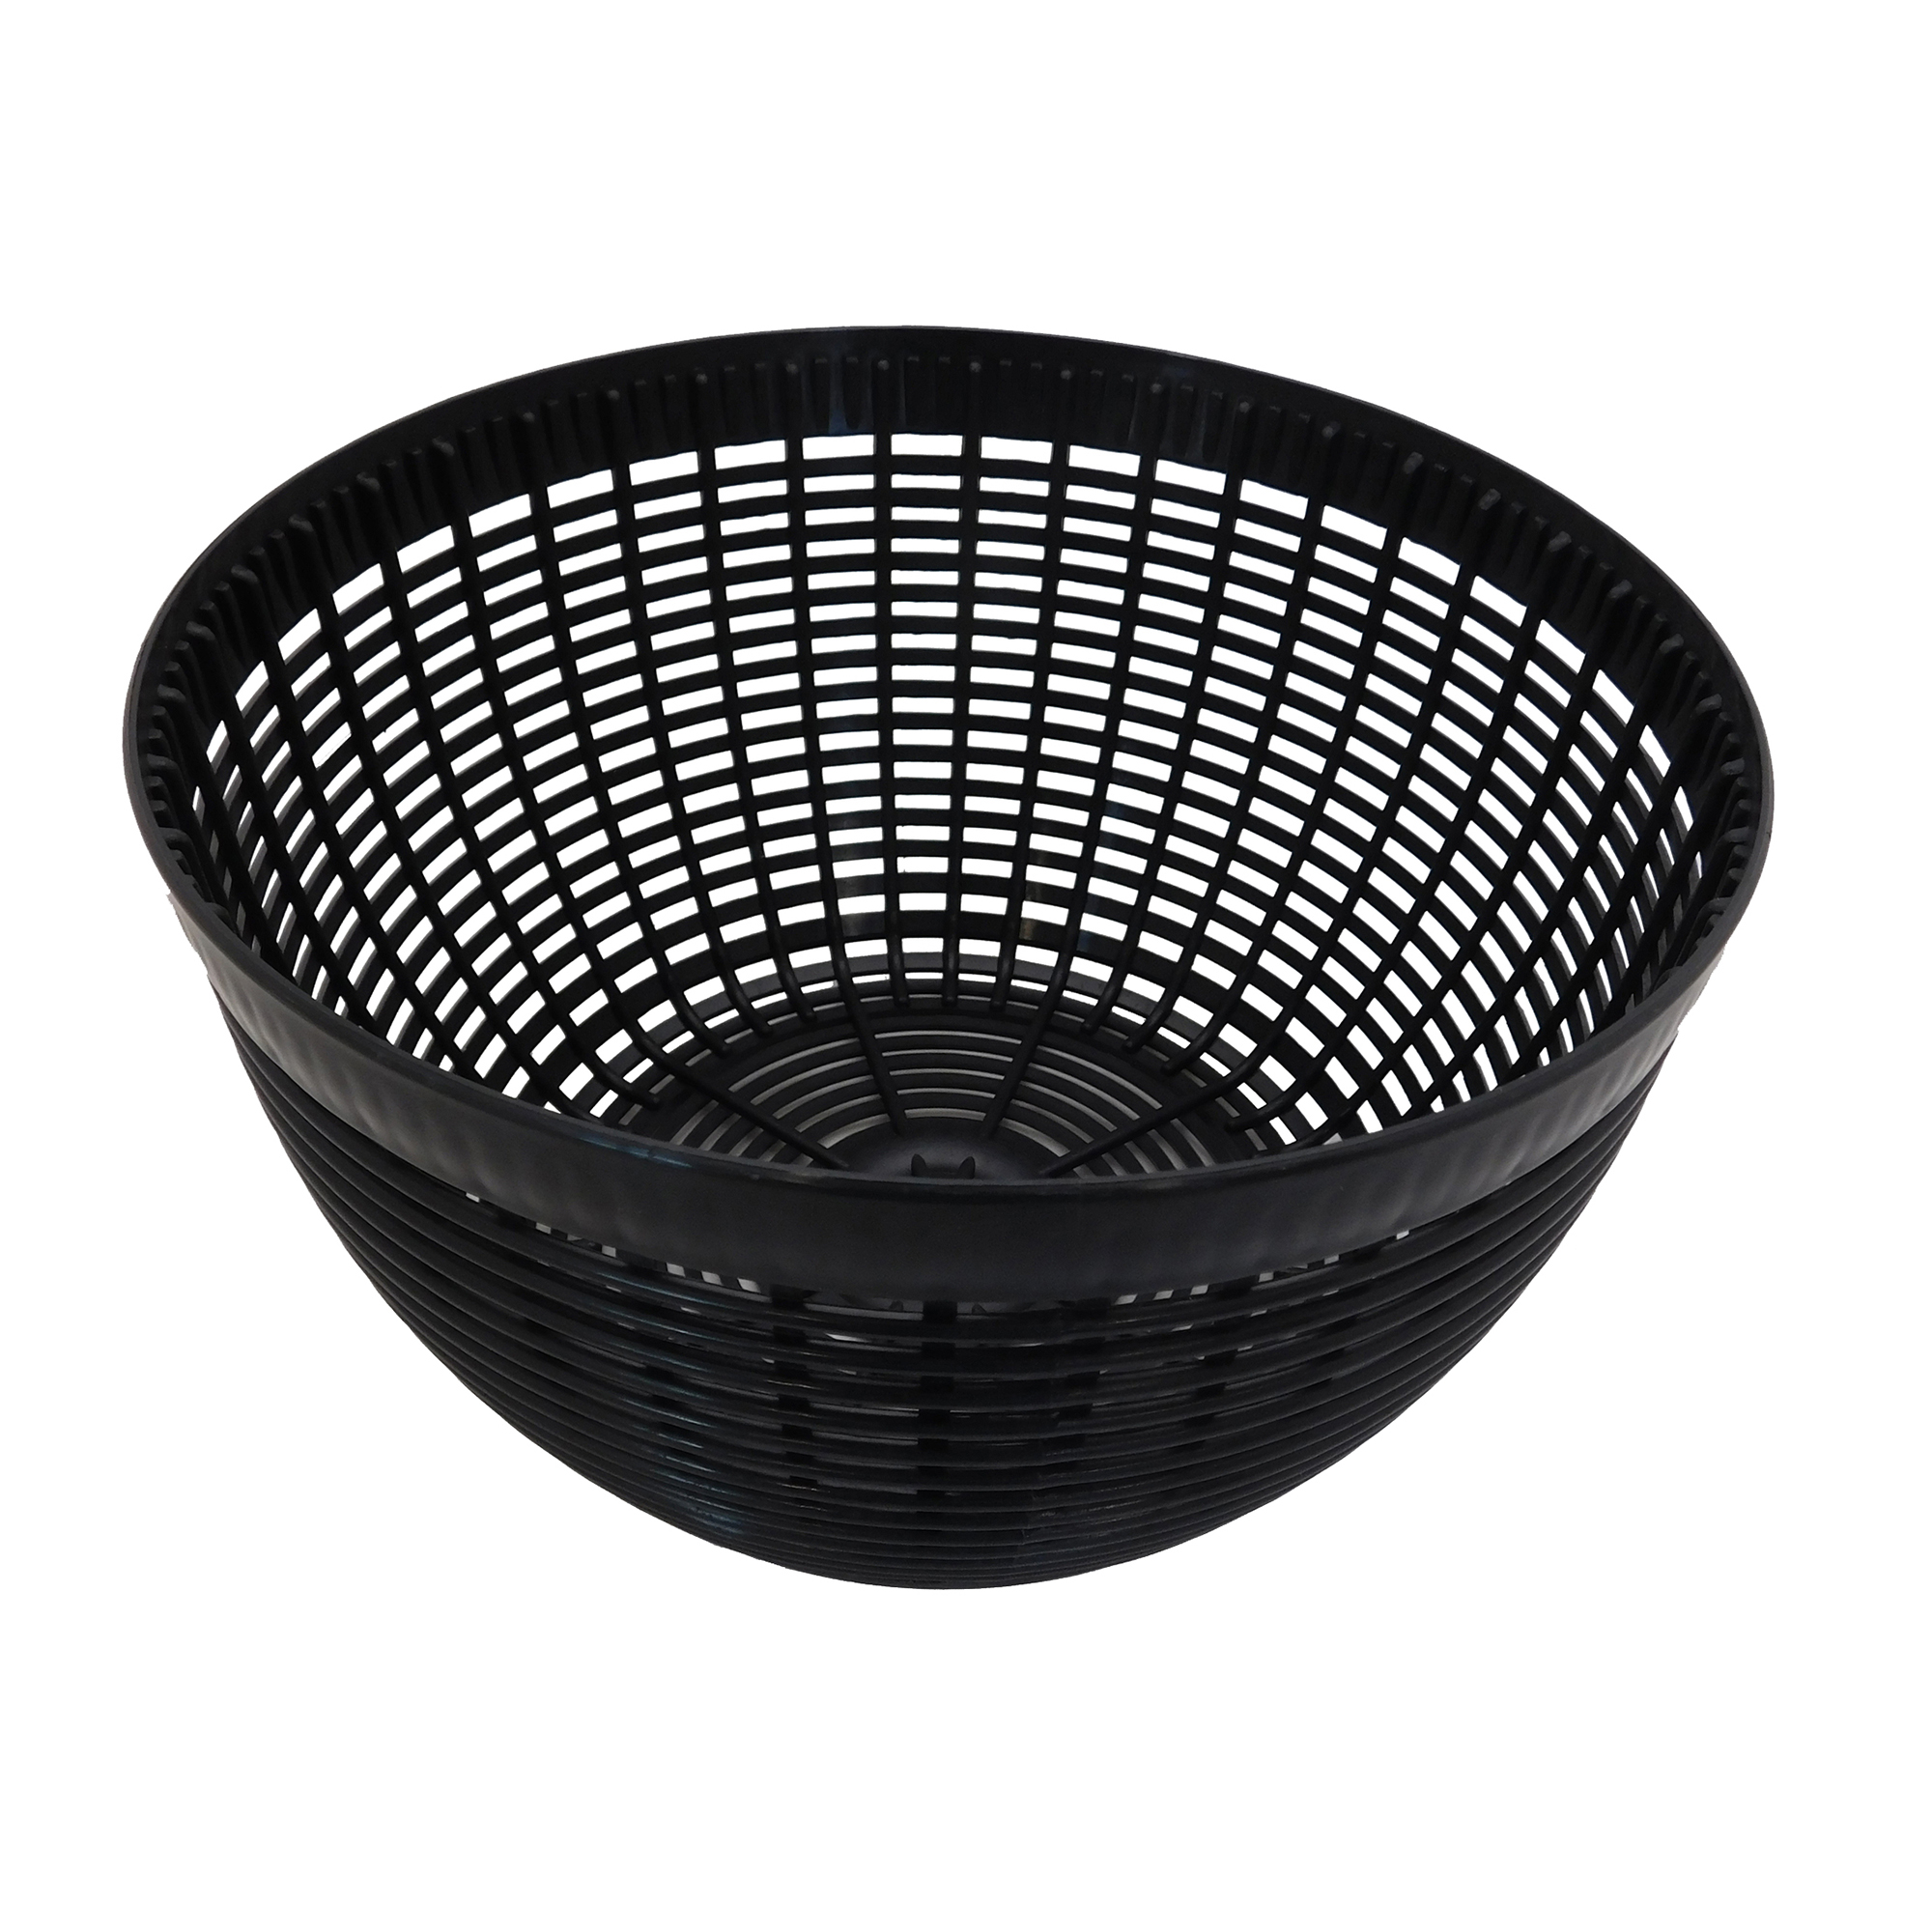 Plastic Basket for Salad Spinner (Item no. 15690/15695)